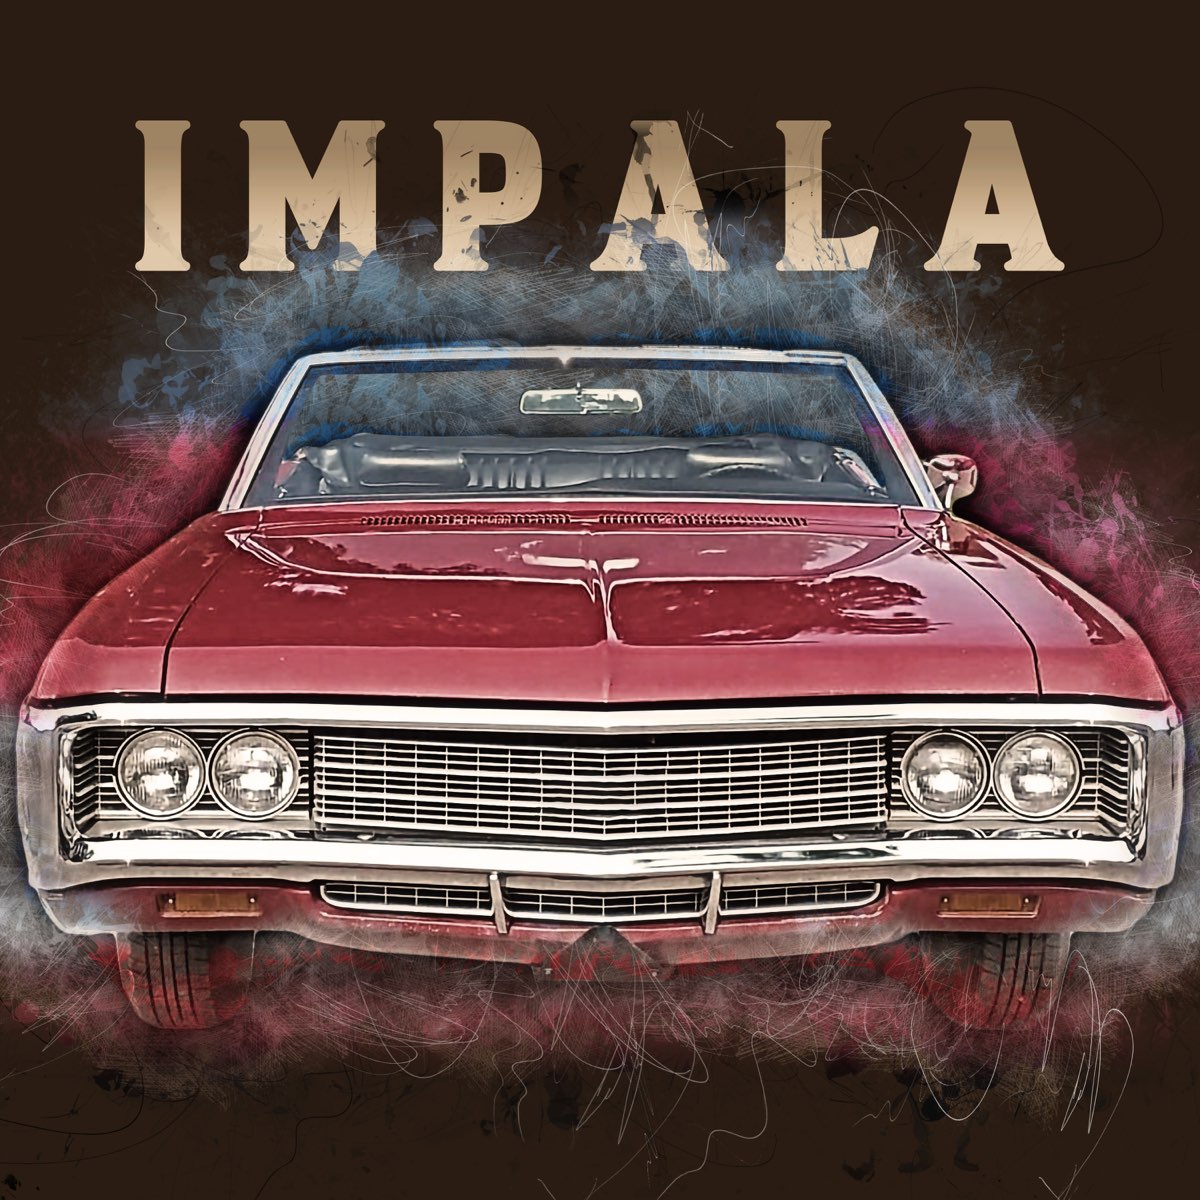 Impala - EP by Impala on Apple Music